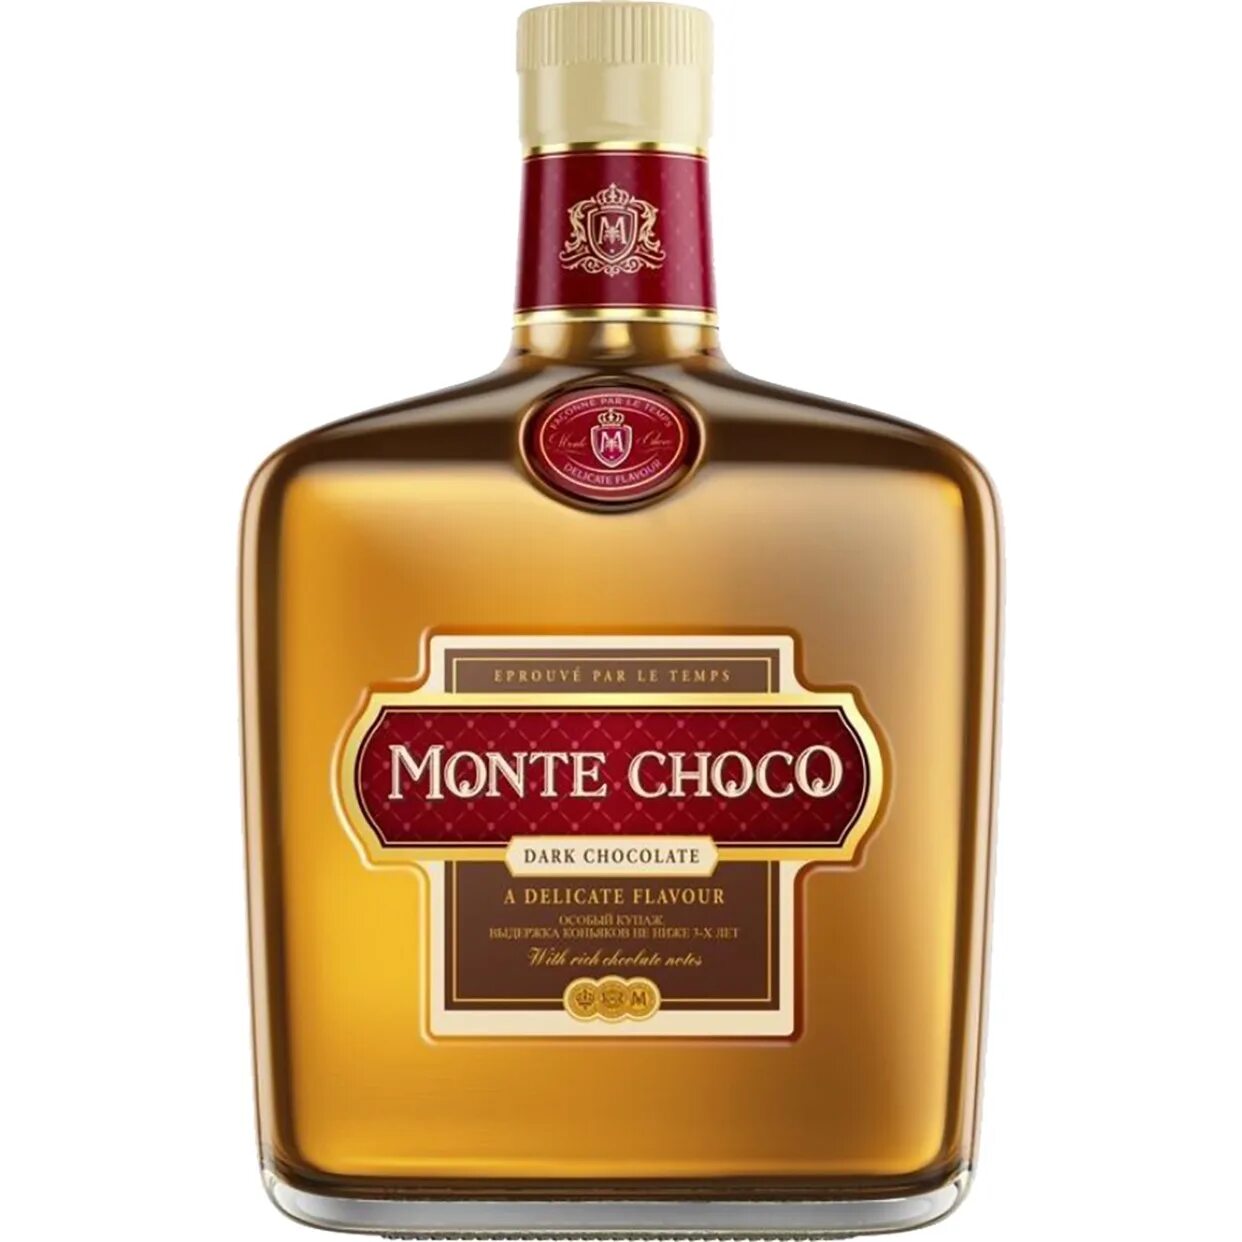 Monte choco irish. Коньяк Monte Choco 0.5. Коктейль коньячный Монте шоко. Монте Чоко дарк шоколад. Коньяк Монте Чоко шоколад.